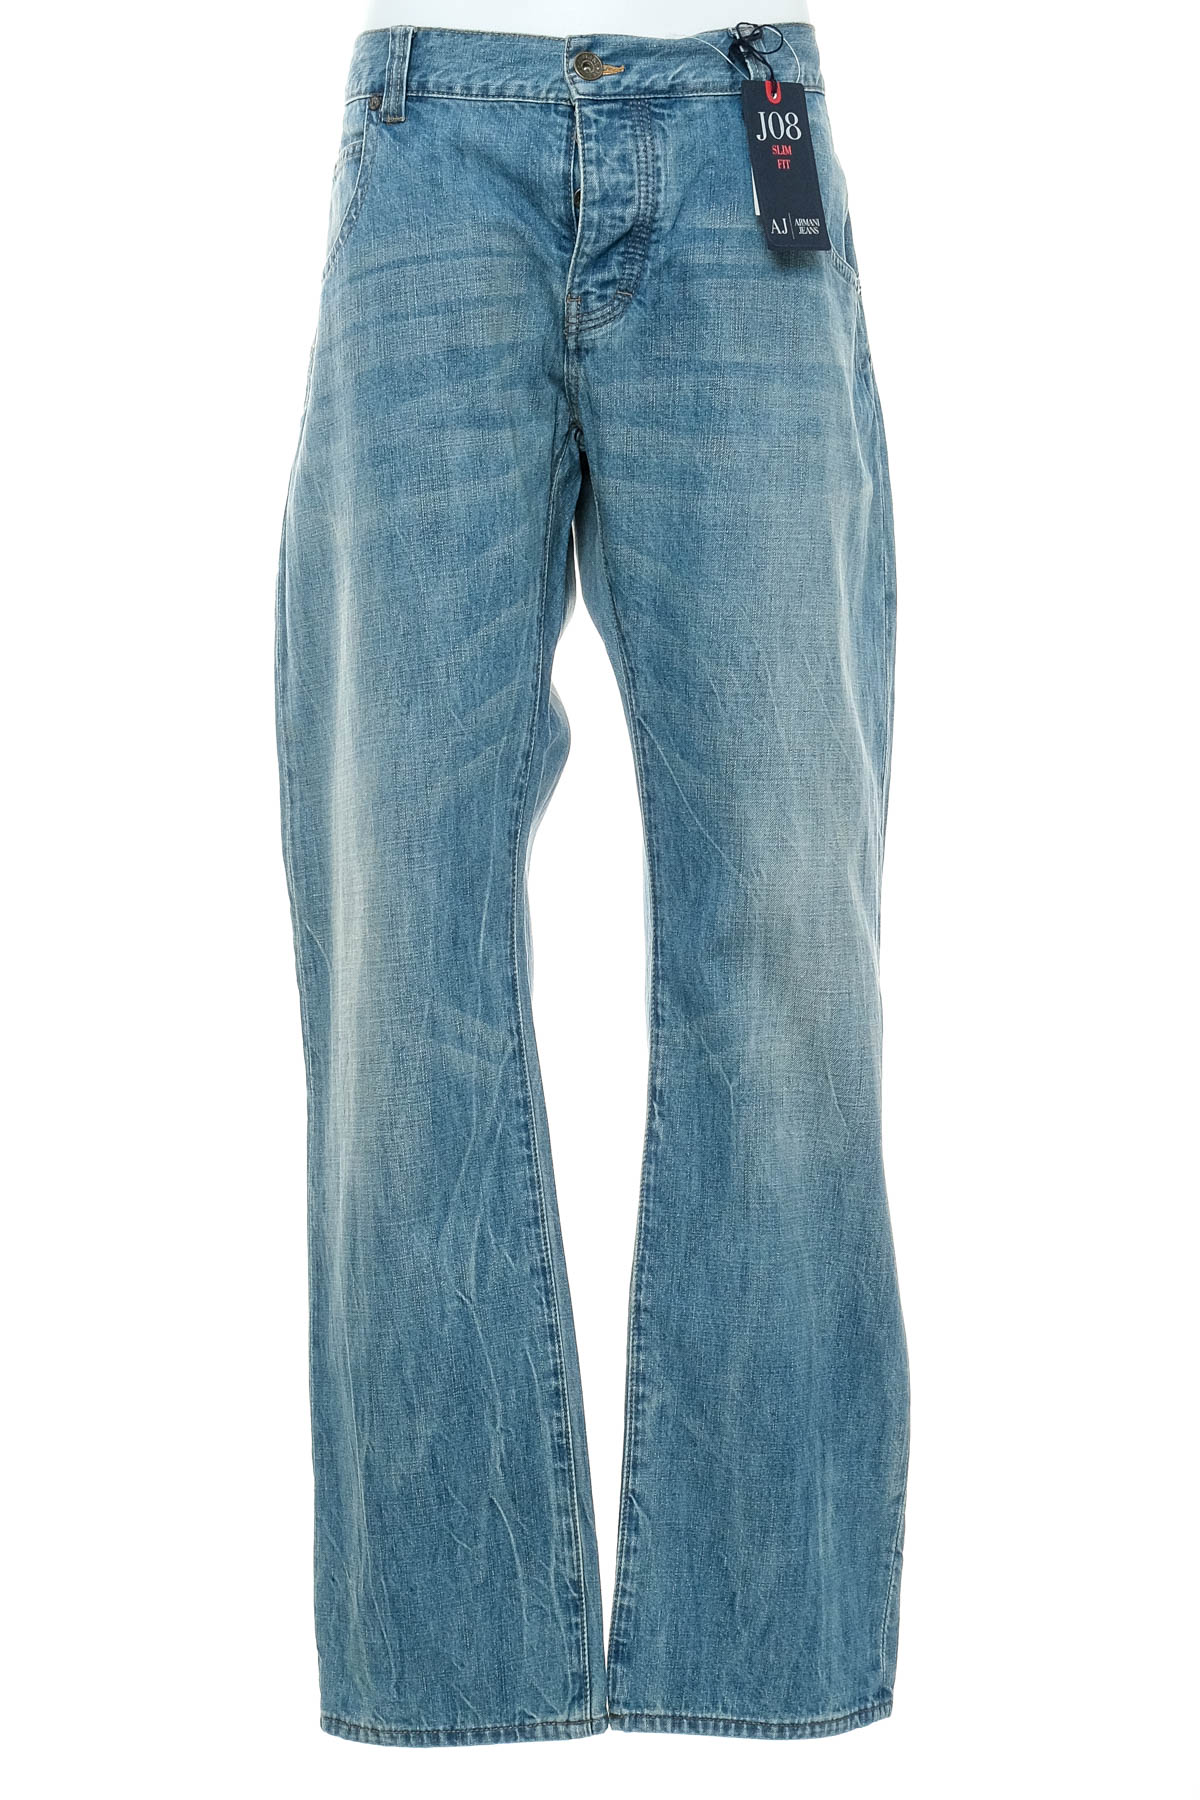 Men's jeans - Armani Jeans - 0